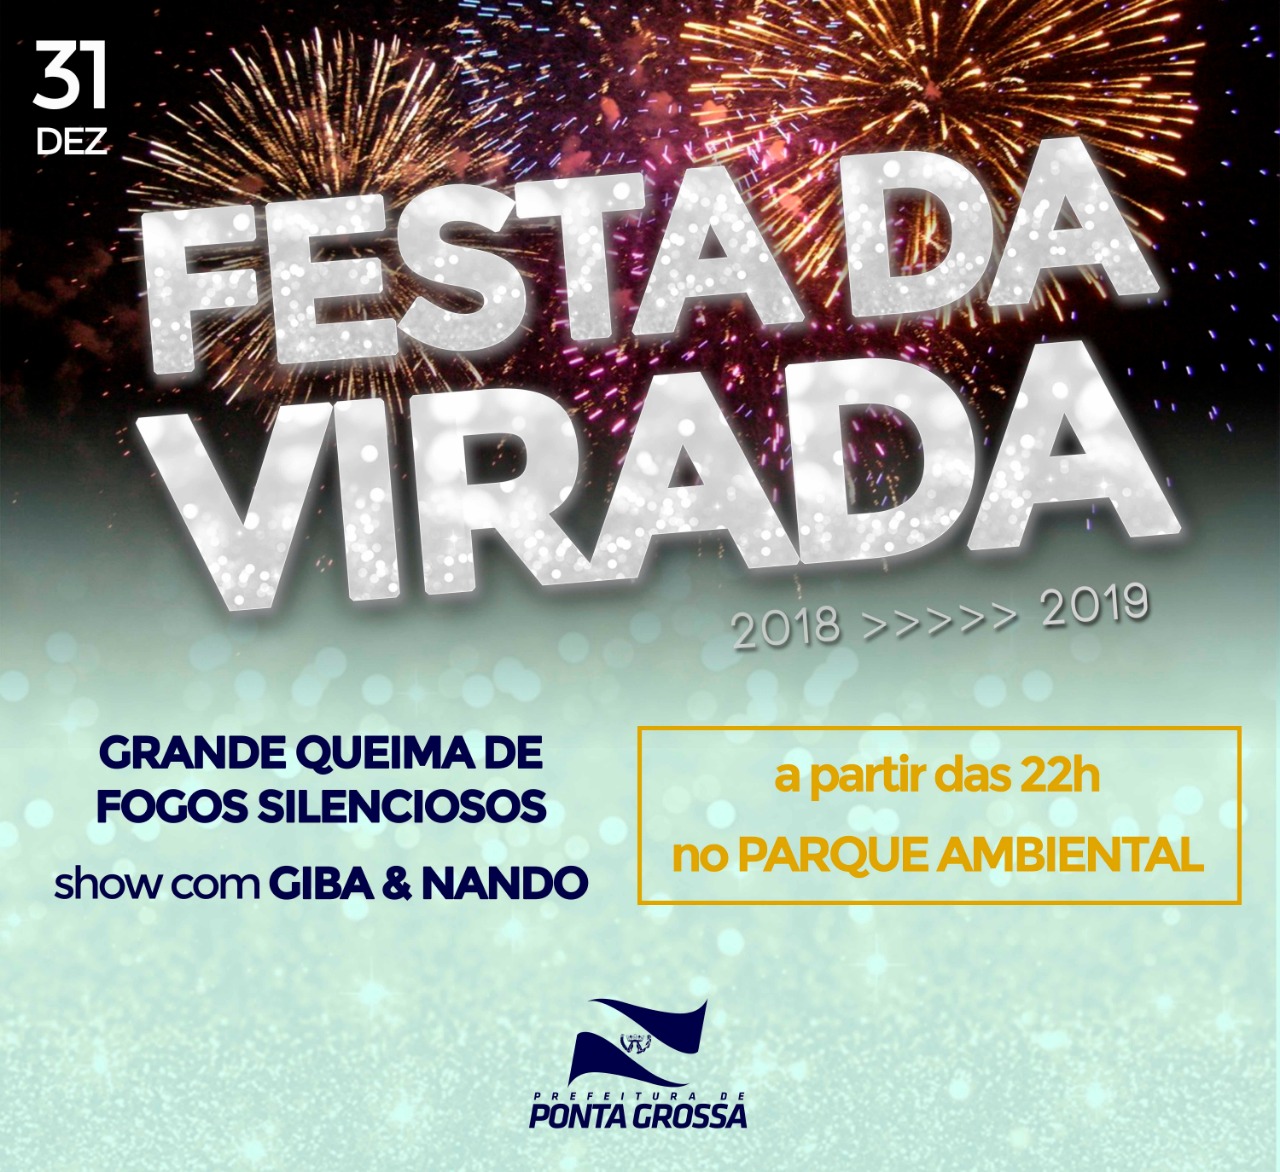 Prefeitura garante 'Festa da Virada' no Parque Ambiental